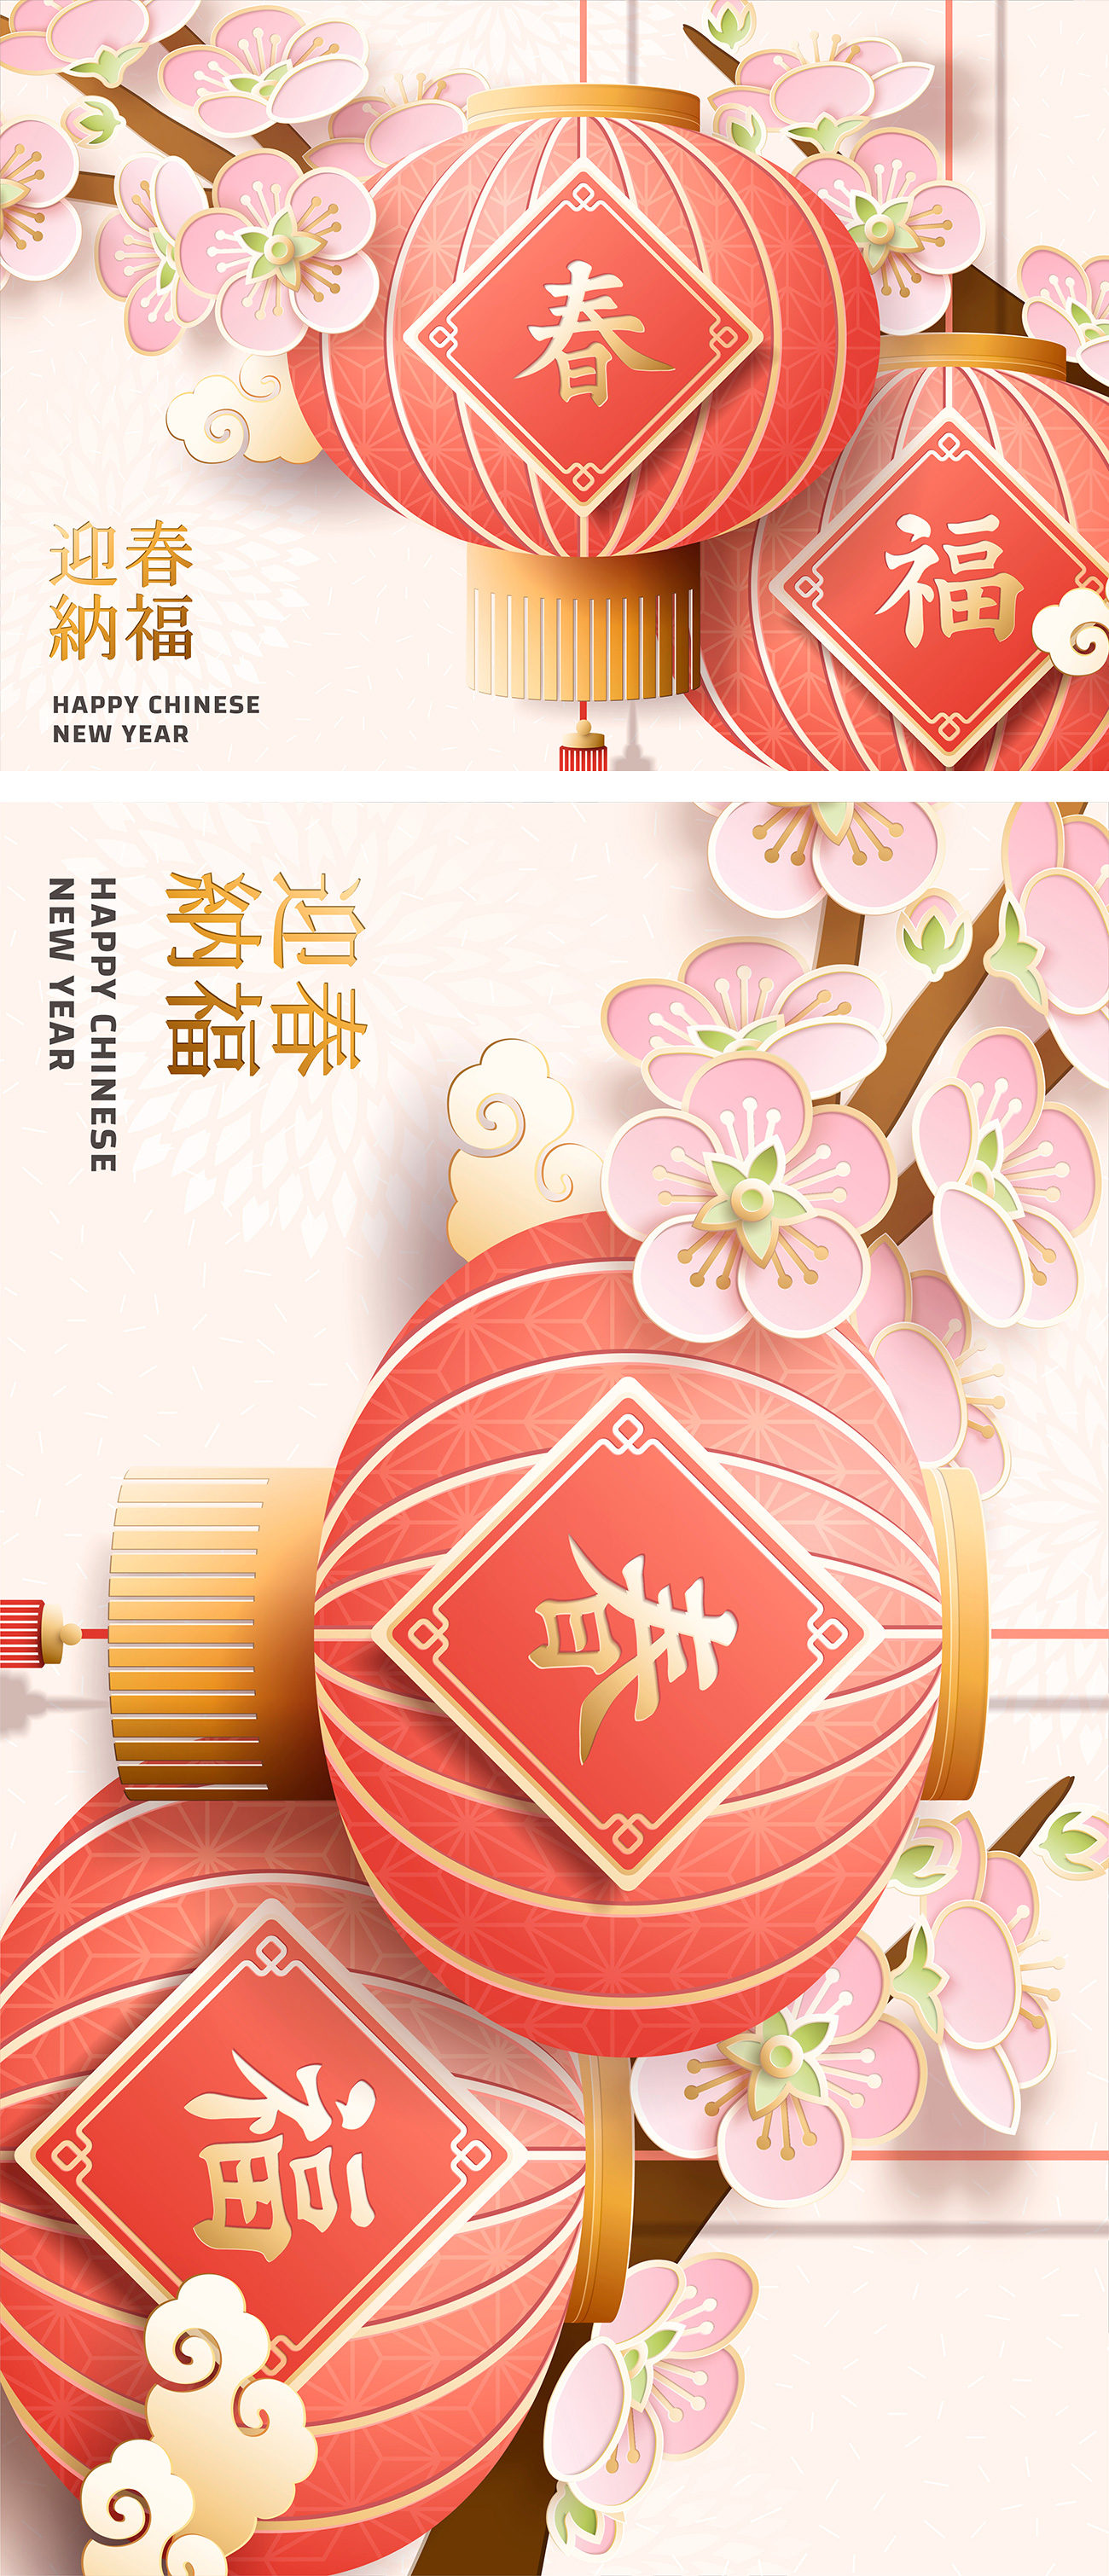 【福、春】2019新年纸艺挂灯新年快乐招贴年画矢量海报设计素